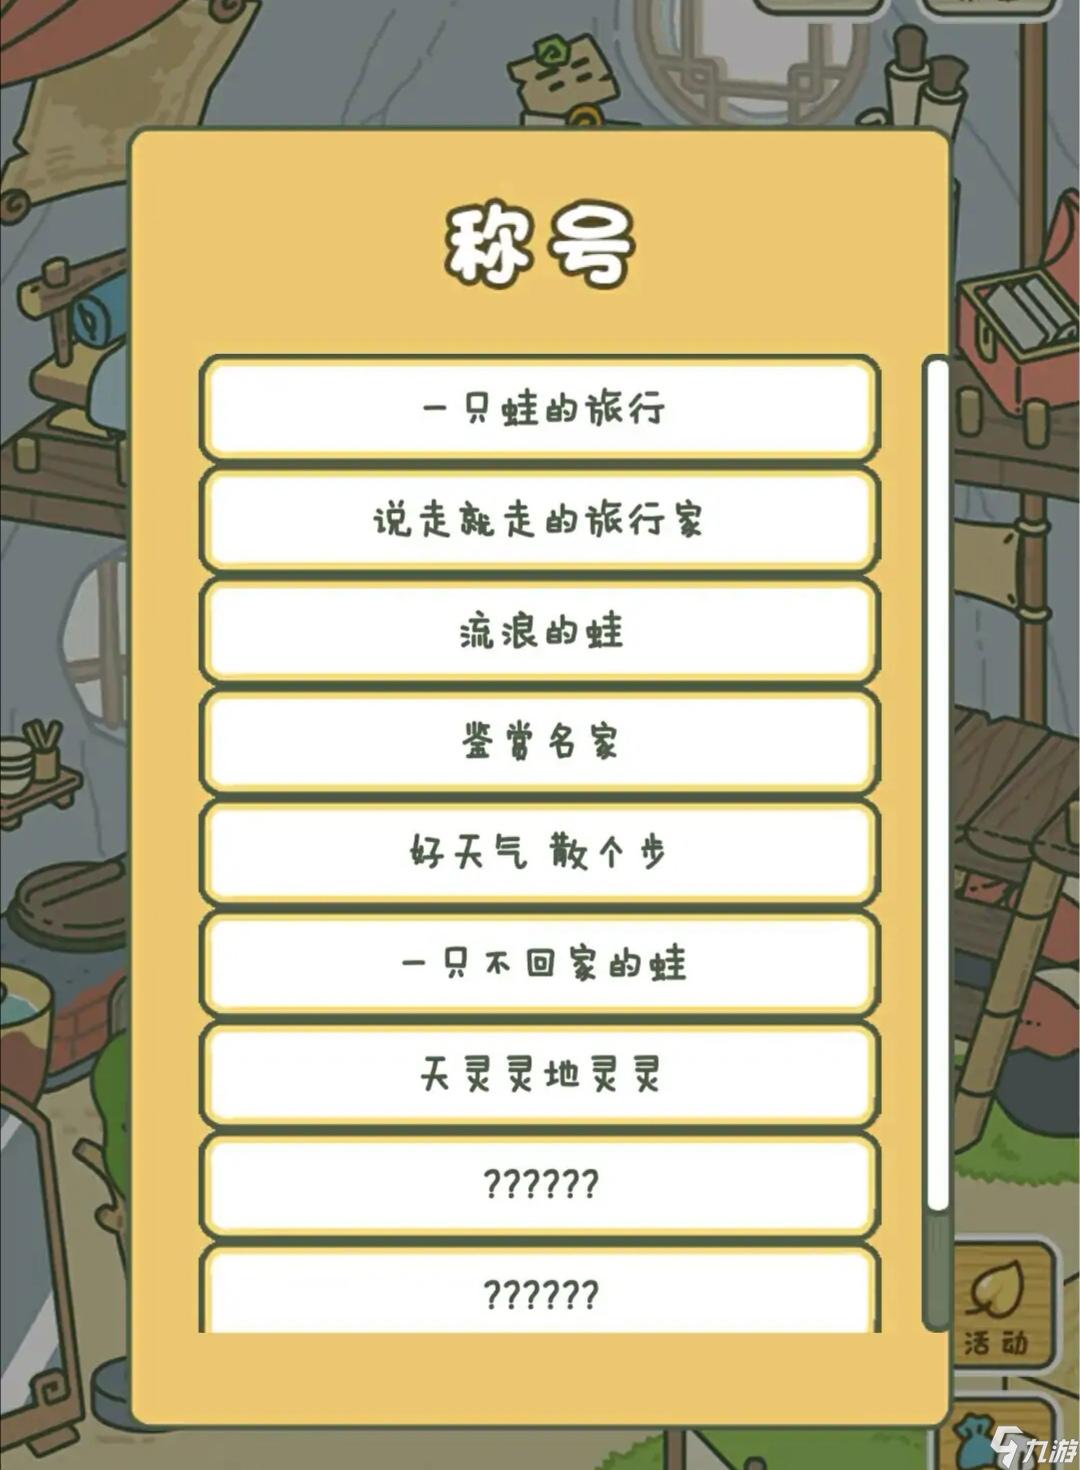 旅行青蛙中国之旅称号怎么得 获得称号详细方法